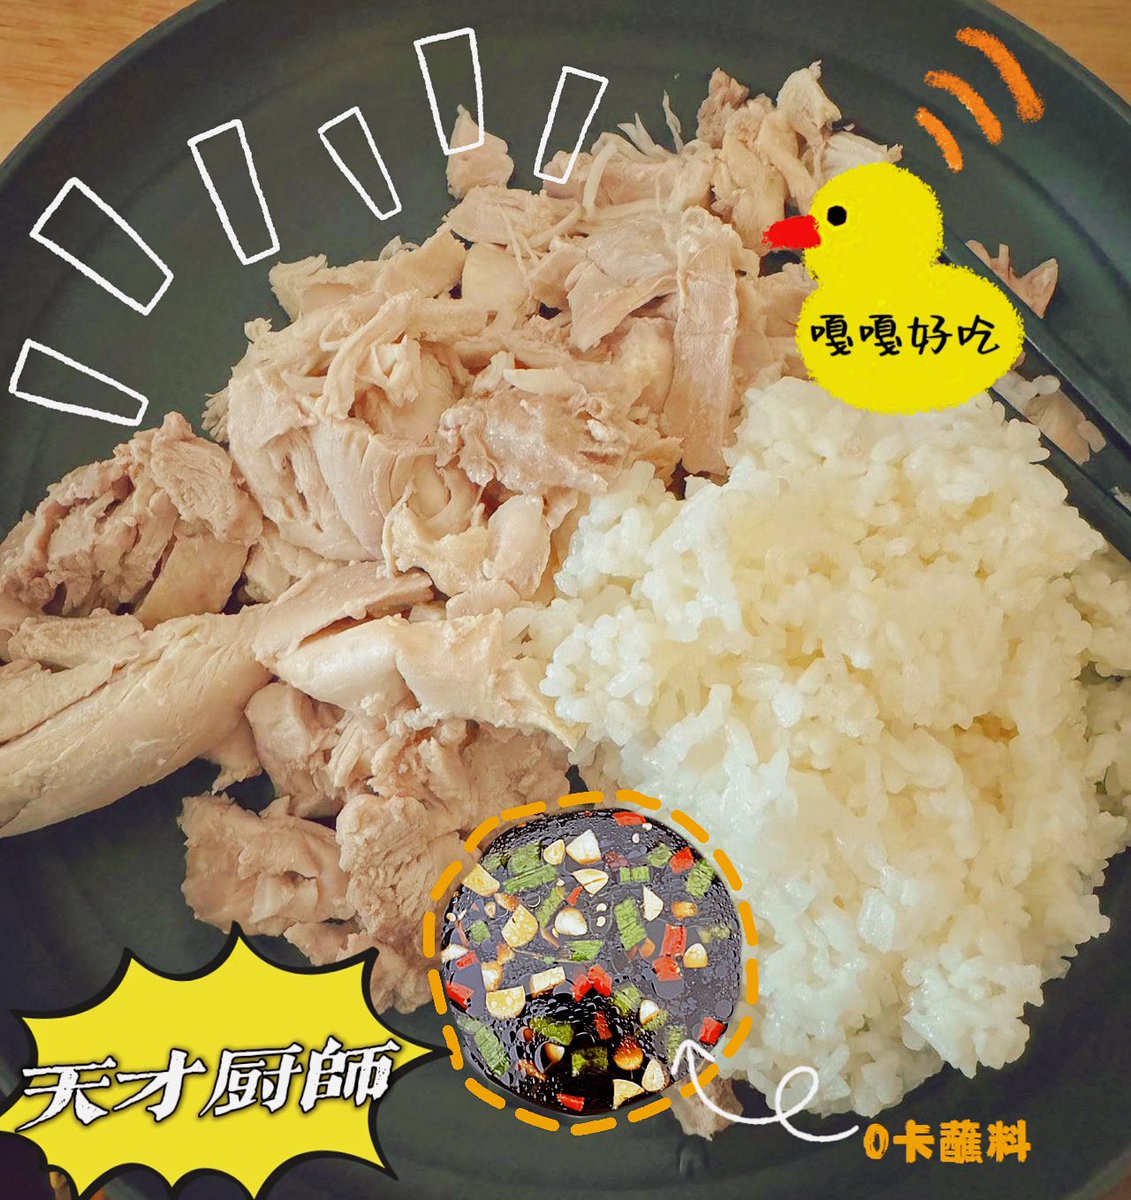 🦆 [AK Weibo Update]

: มื้อลดไขมันง่ายๆ สุด ๆ!
เนื้อต้มกับหัวหอม ขิง และไวน์สำหรับทำอาหาร
น้ำจิ้มก็มีซีอิ๊ว พริกขี้หนู ต้นหอม ผักชี กระเทียมสับ ซุปไก่ น้ำมันเล็กน้อย

— Like & Comment & Repost —

🔗 weibo.com/5464355430/502…

#LiuZhang #AK刘彰 #หลิวจาง